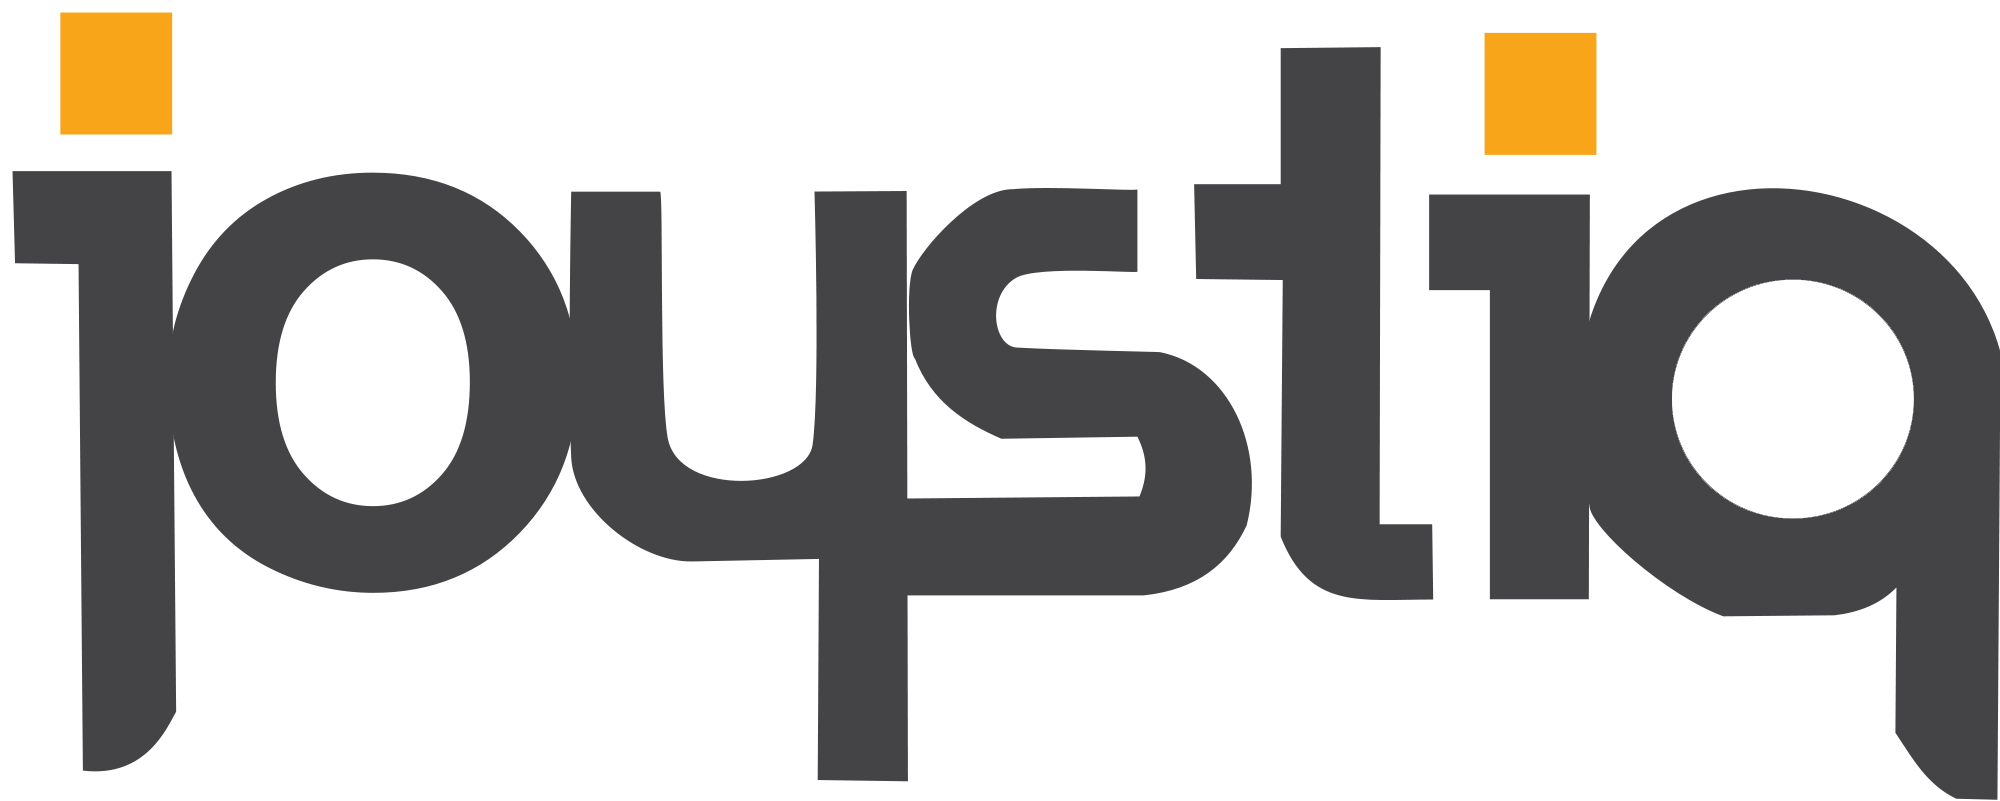 Joystiq Logo - AOL is Shutting Down Joystiq